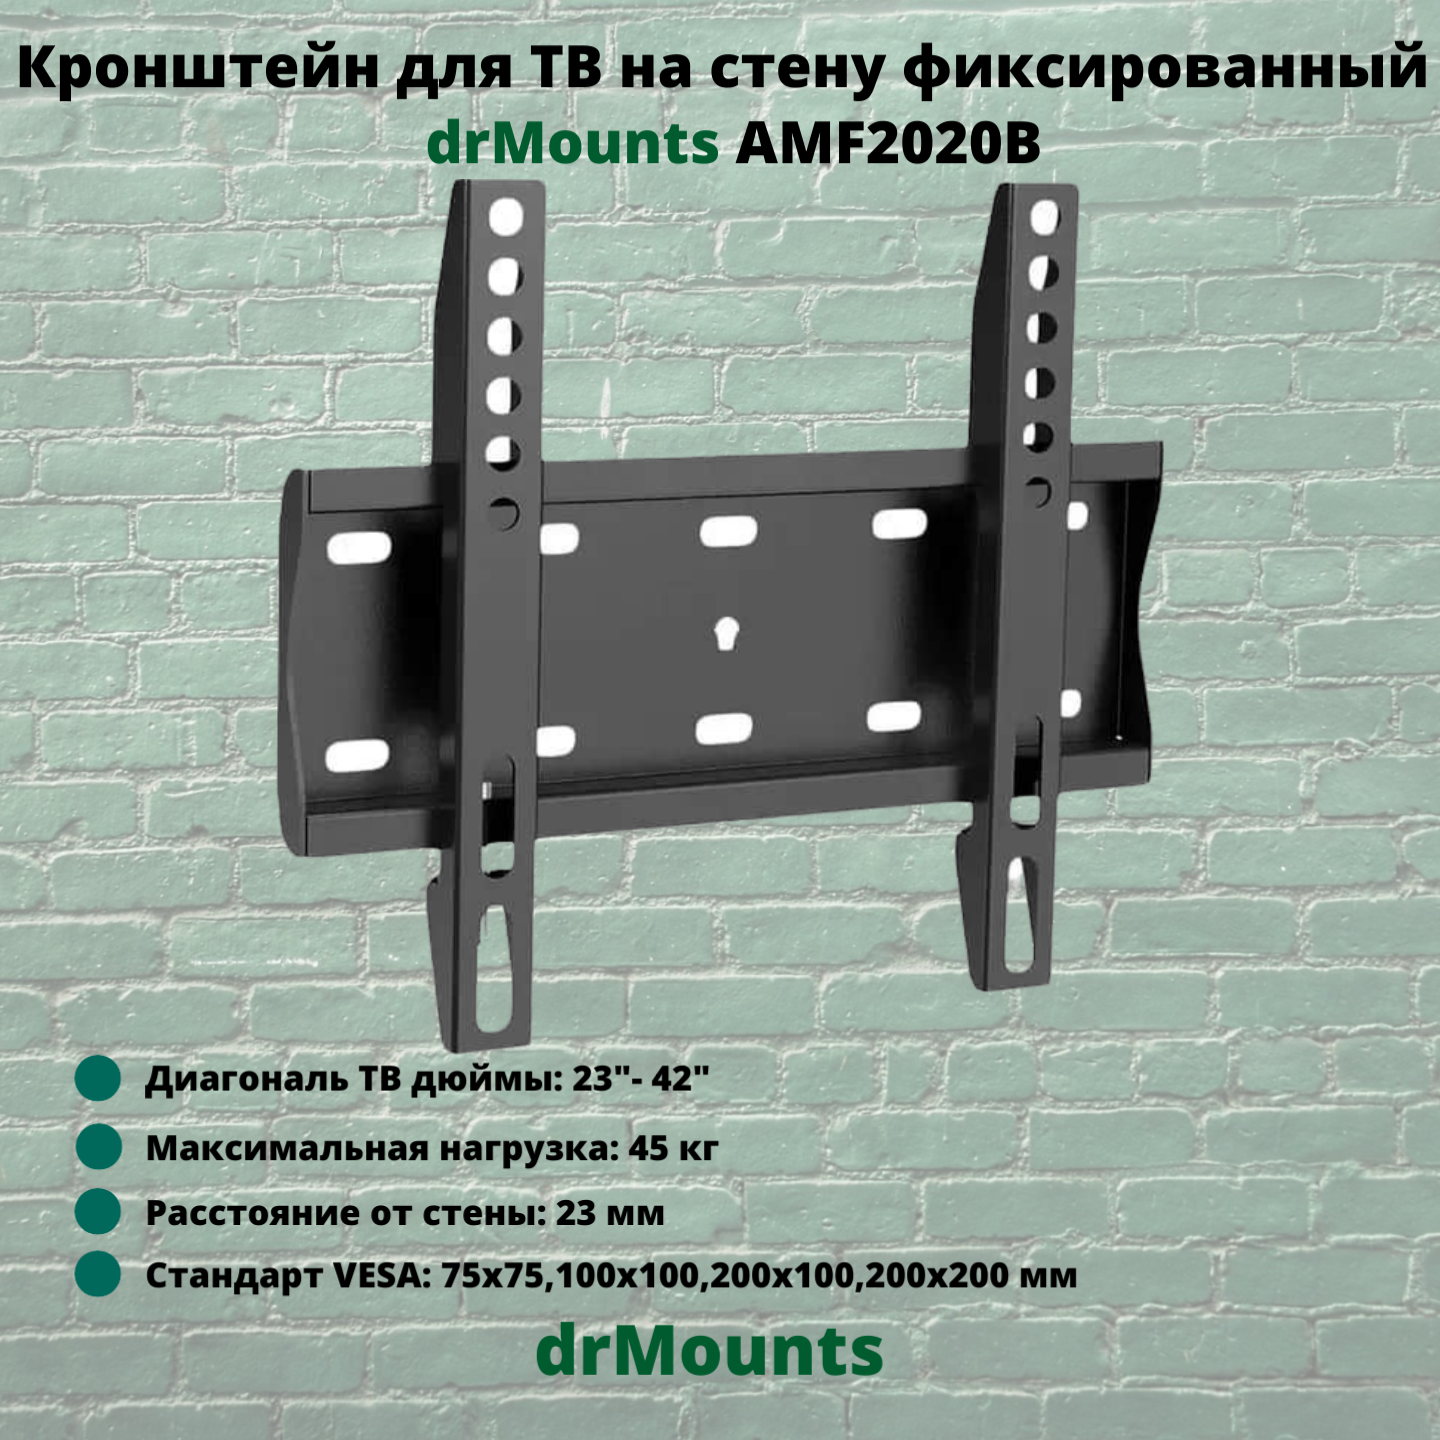 Кронштейн для телевизора на стену фиксированный диагональ 23"-42" drMounts AMF2020B, черный